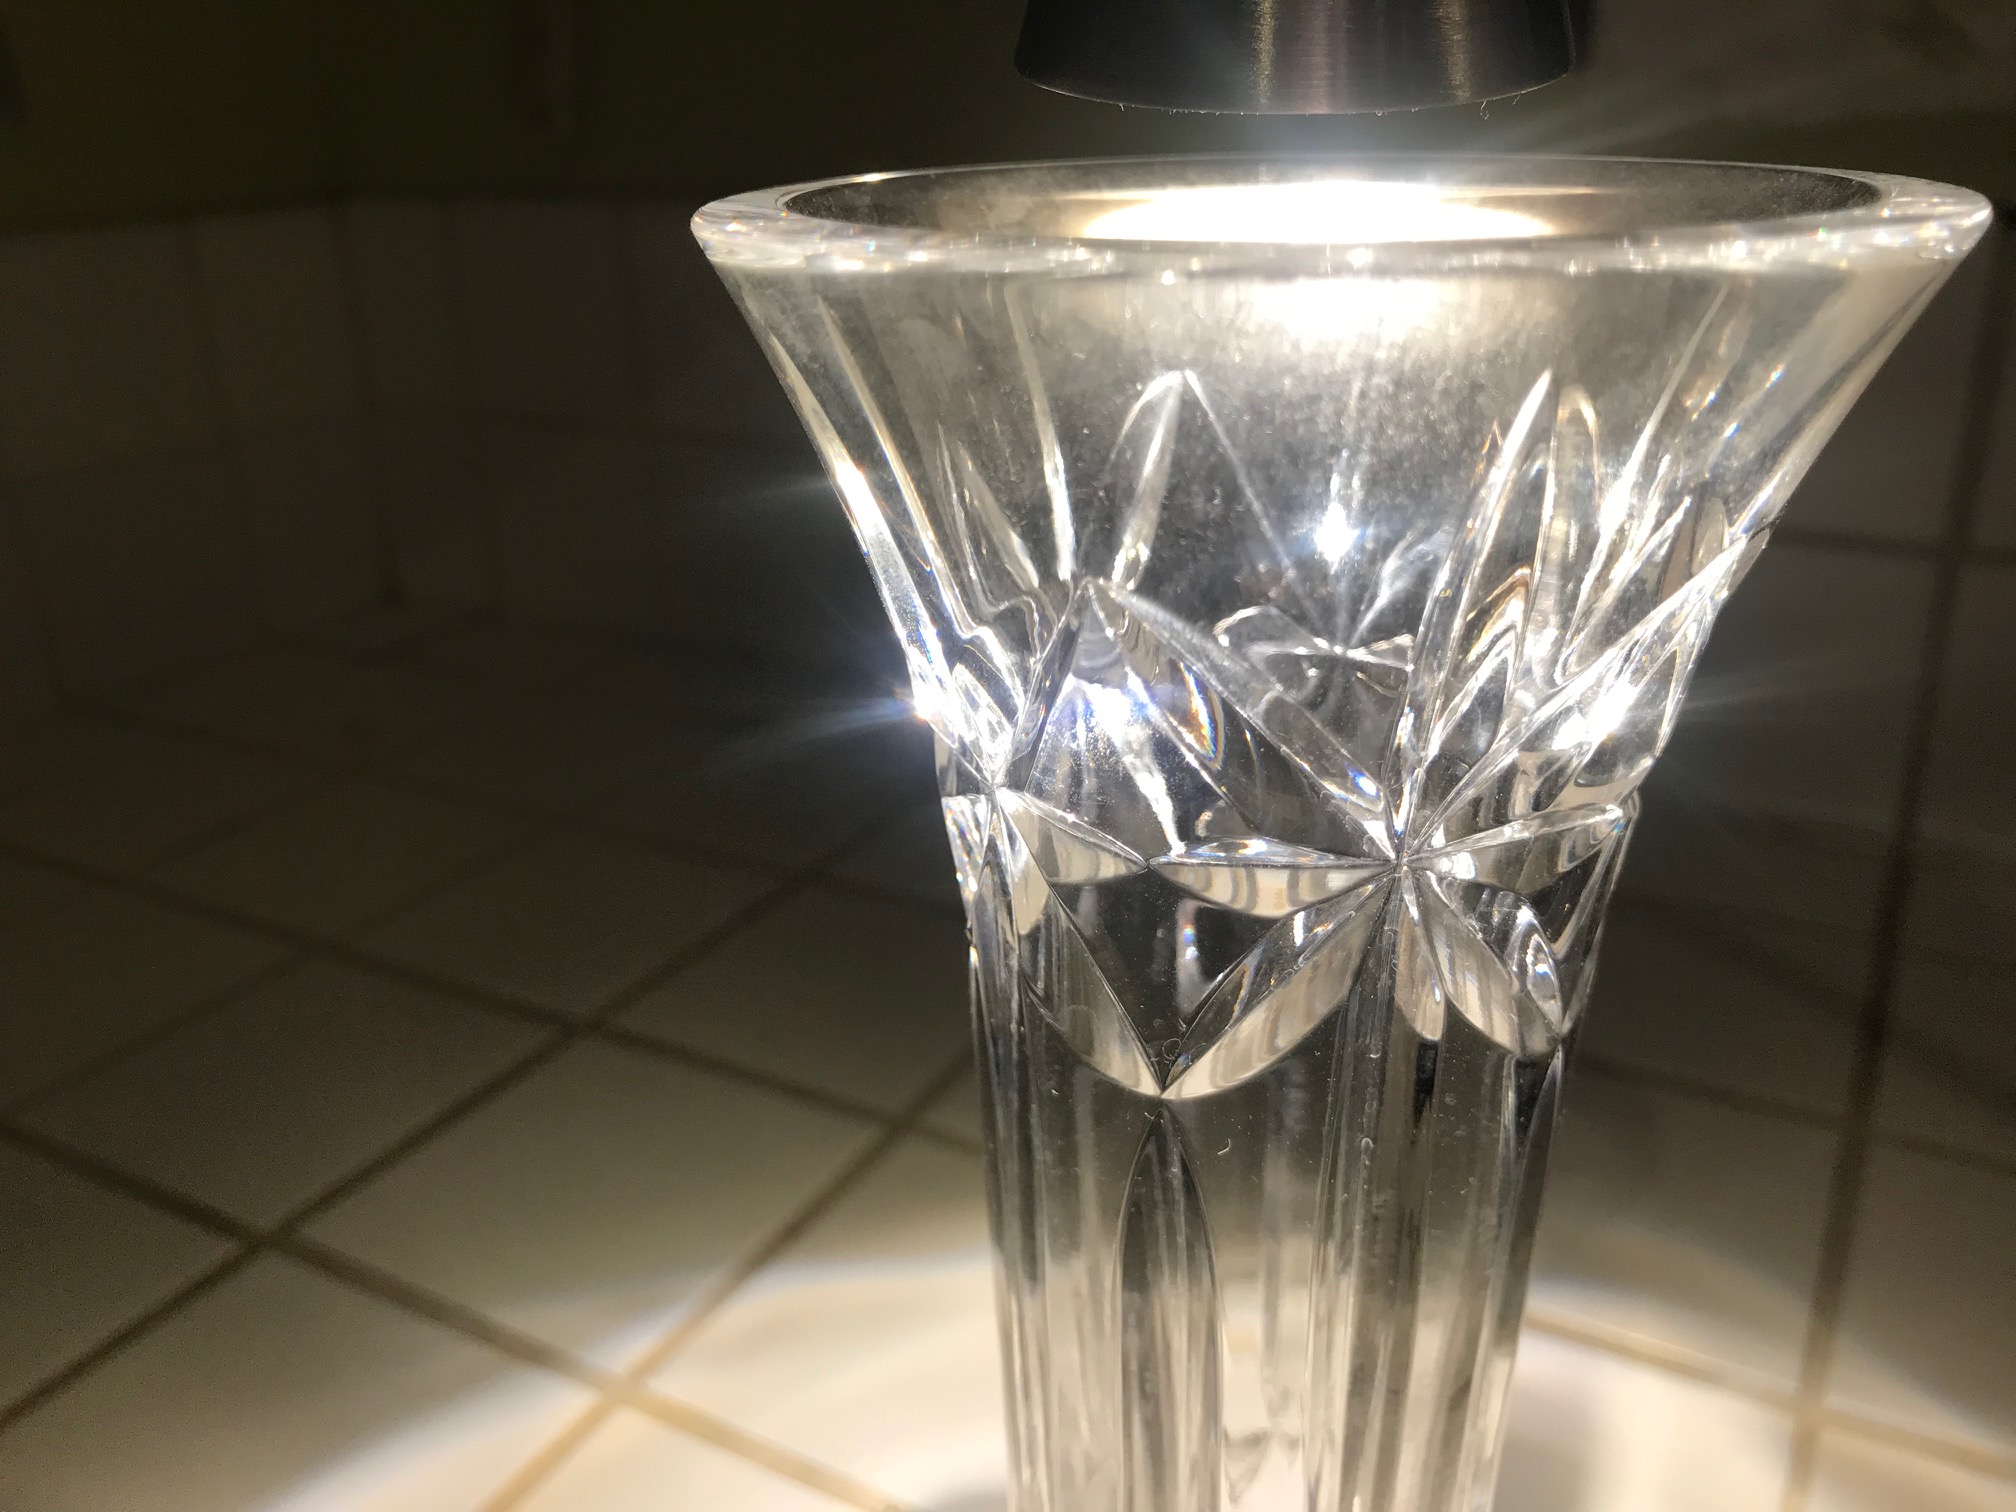 Waterford crystal bud vase: 386,000 ppm Lead (39% Lead)! Crystal